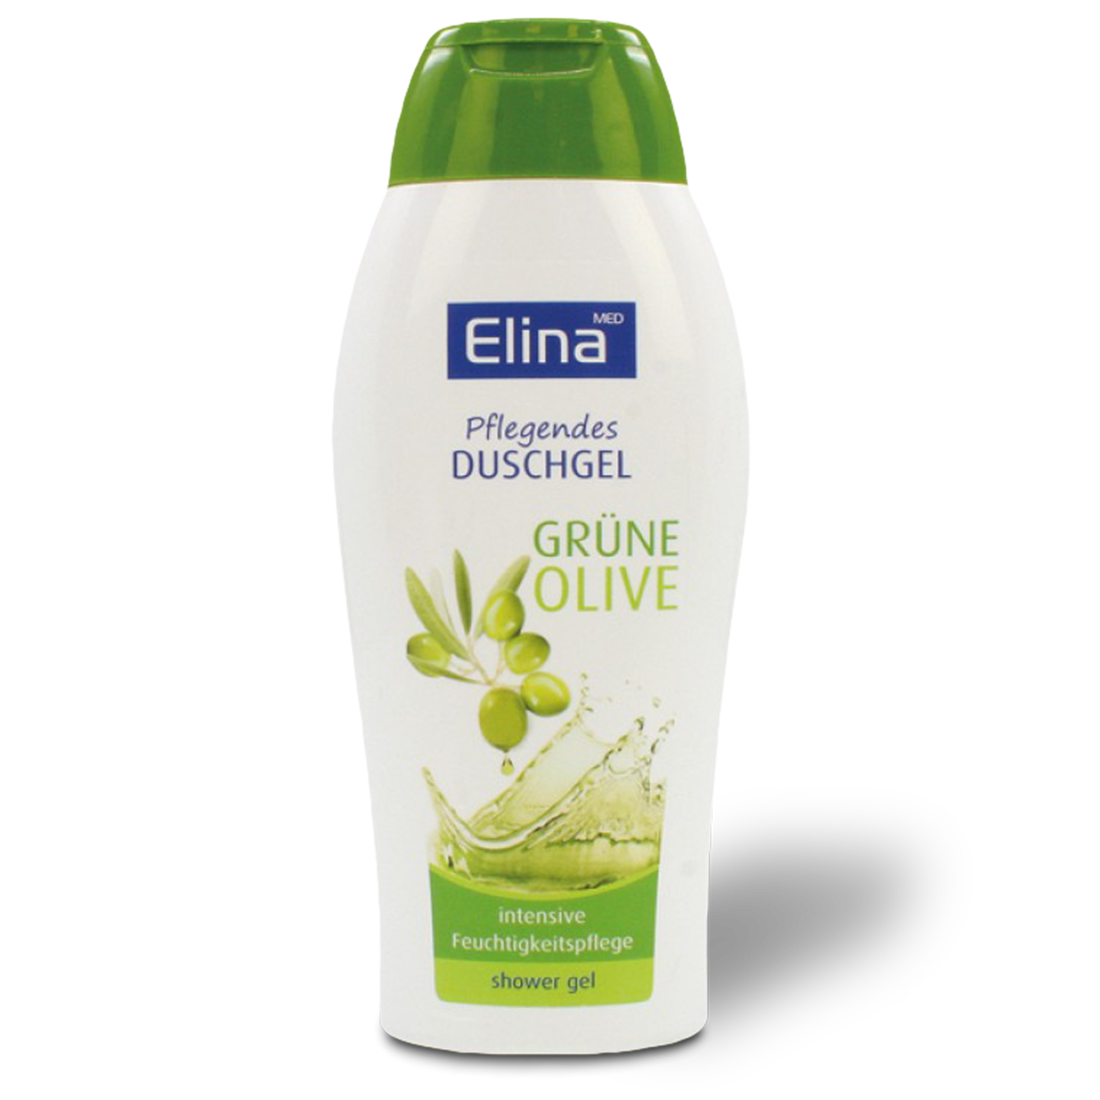 Elina Duschgel Olive 250 ml